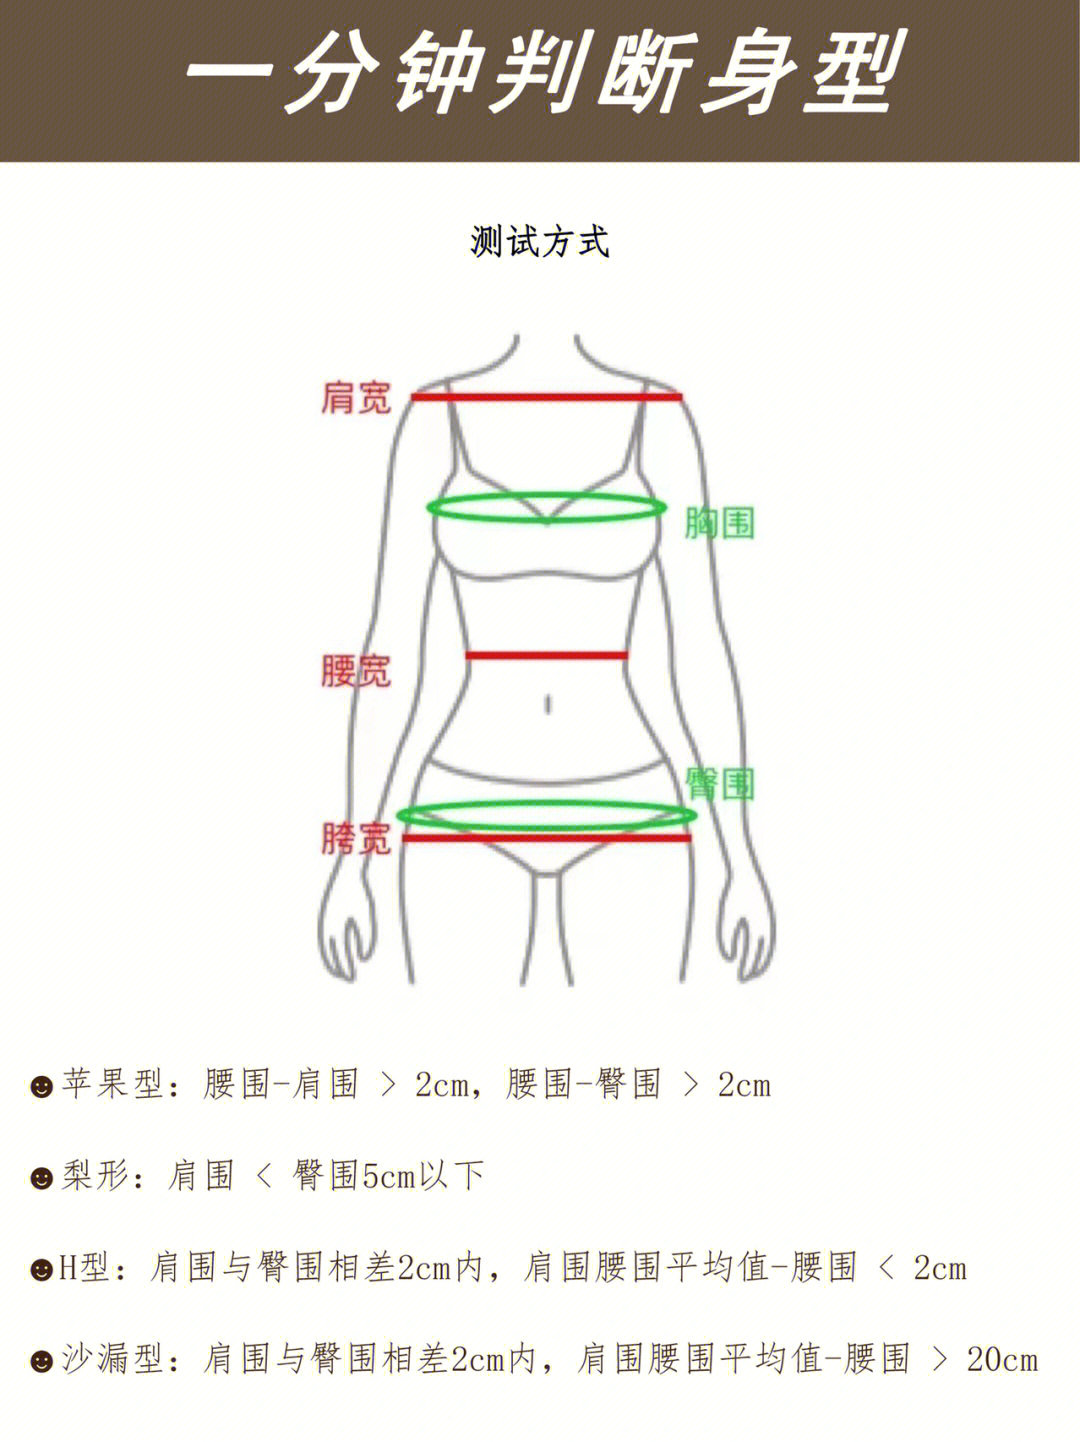 先测量出肩围,胸围,腰围,臀围对应如下9597苹果型:腰围